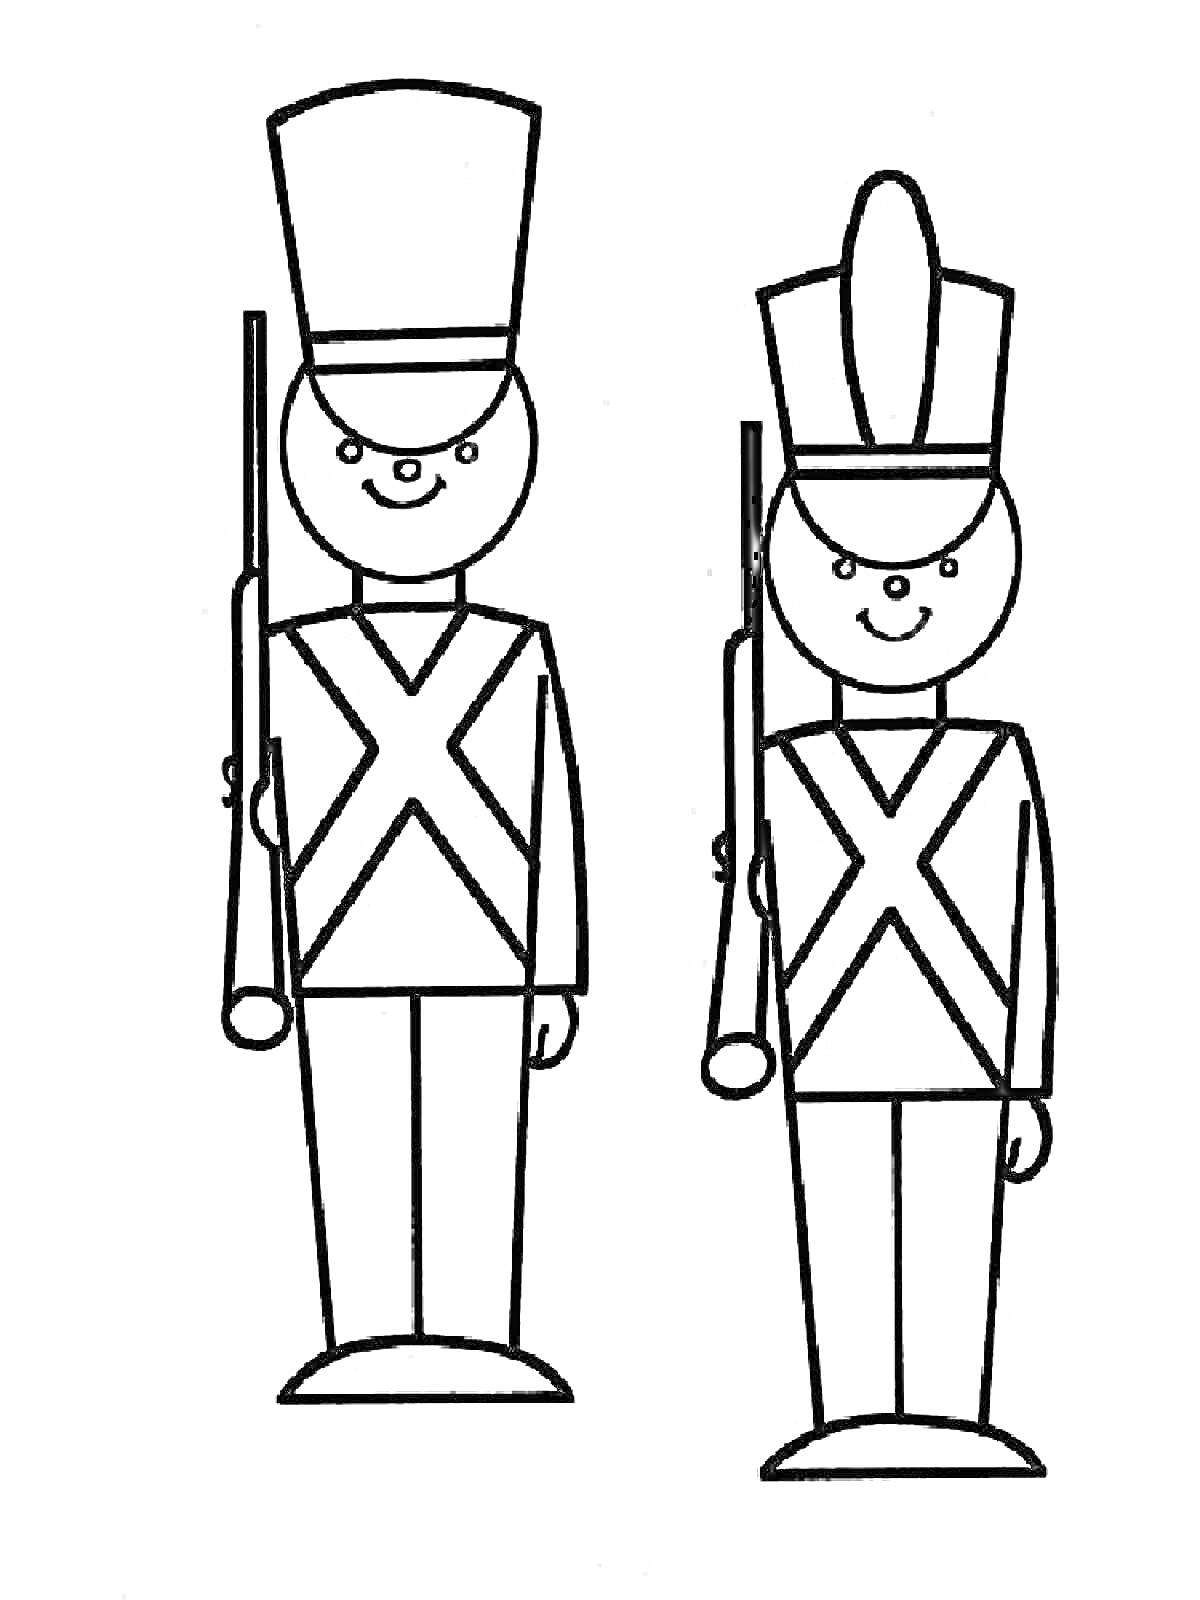 Раскраска два игрушечных солдатика с ружьями